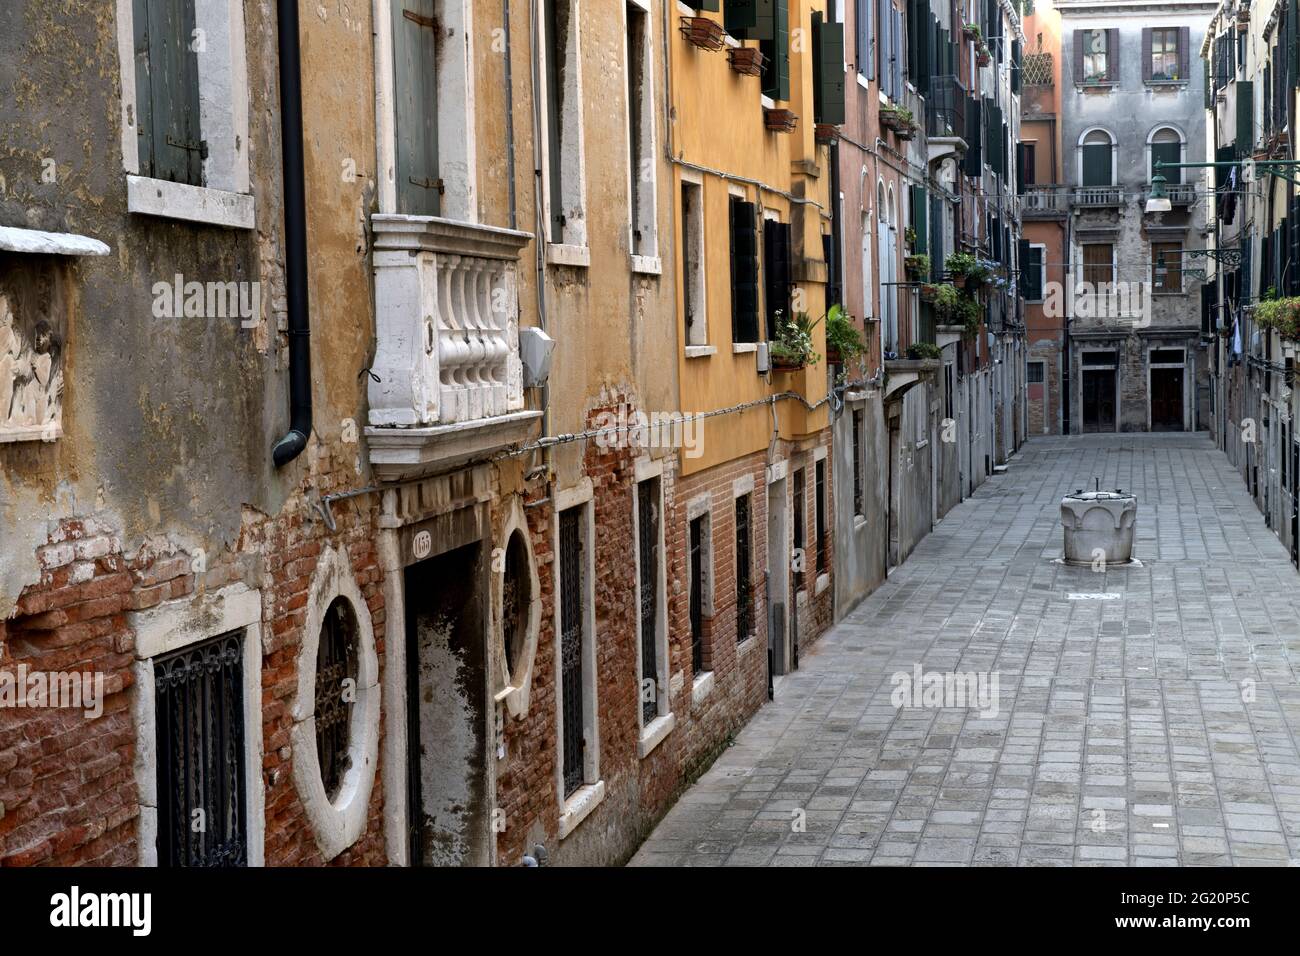 Calle, la rue vénitienne typique dans le quartier de Cannaregio, à Venise. Banque D'Images